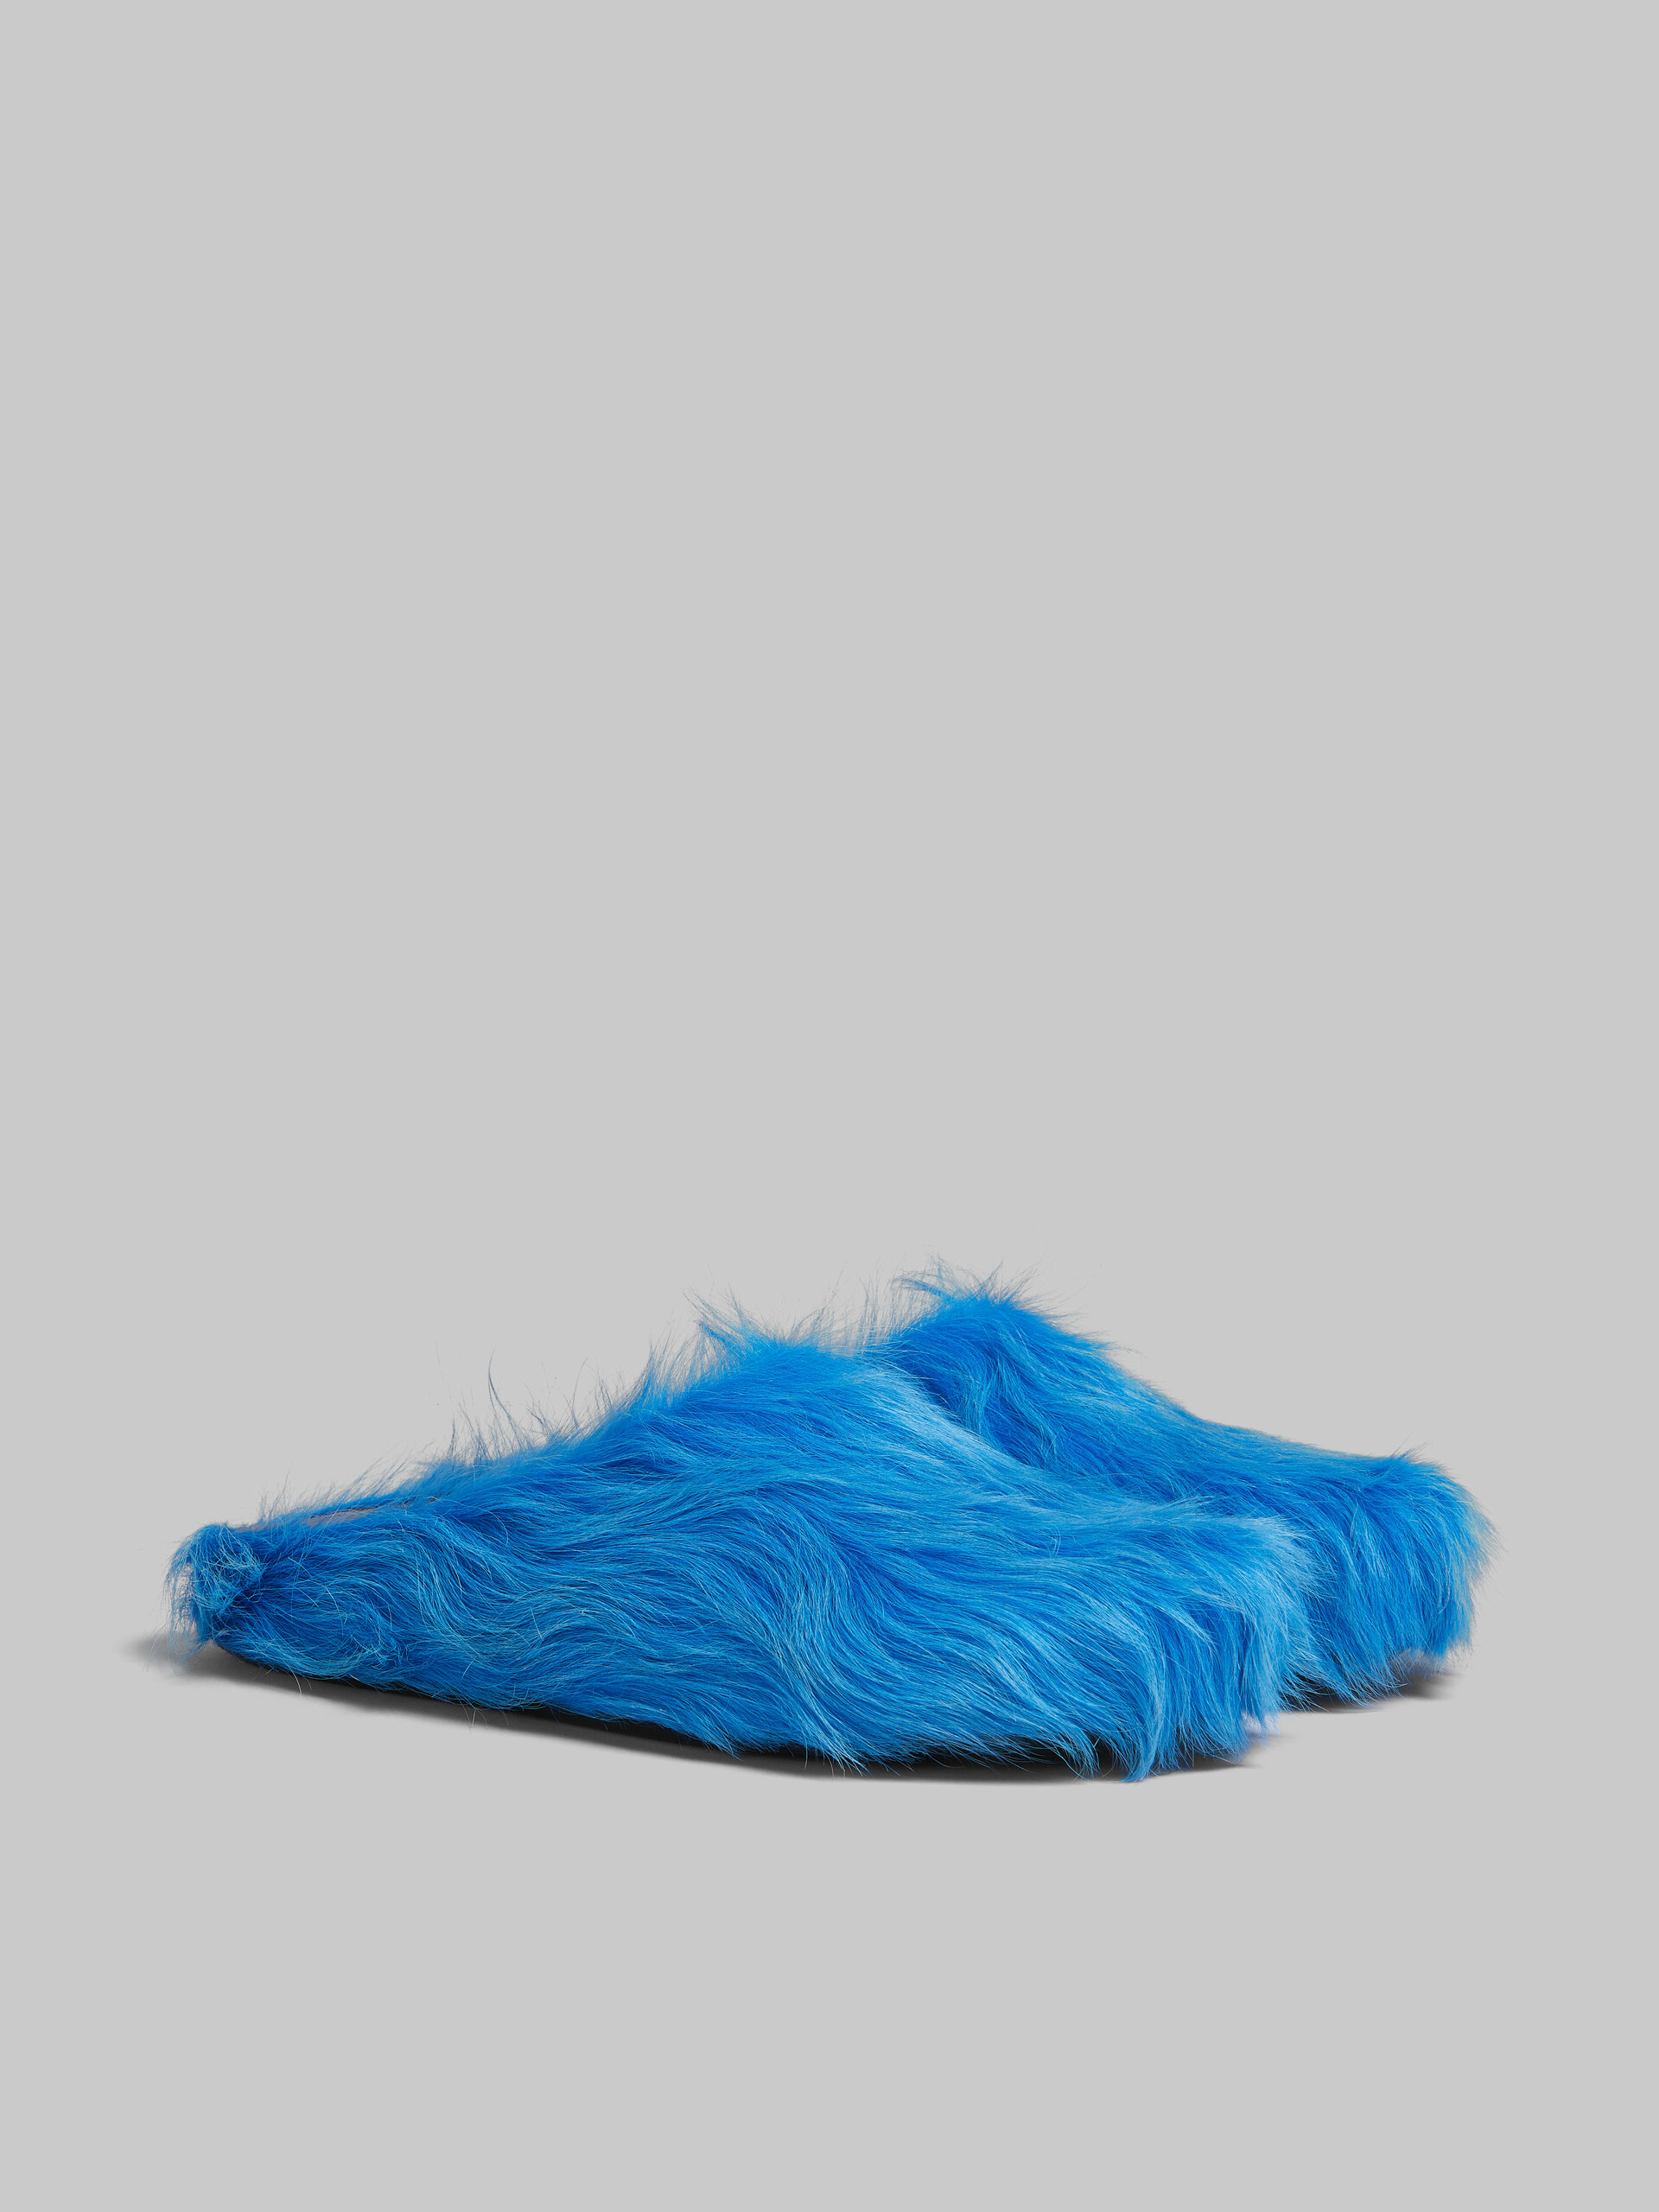 Mocasín sin talón de piel de becerro azul efecto pelo sensación de pies descalzos - Zuecos - Image 2